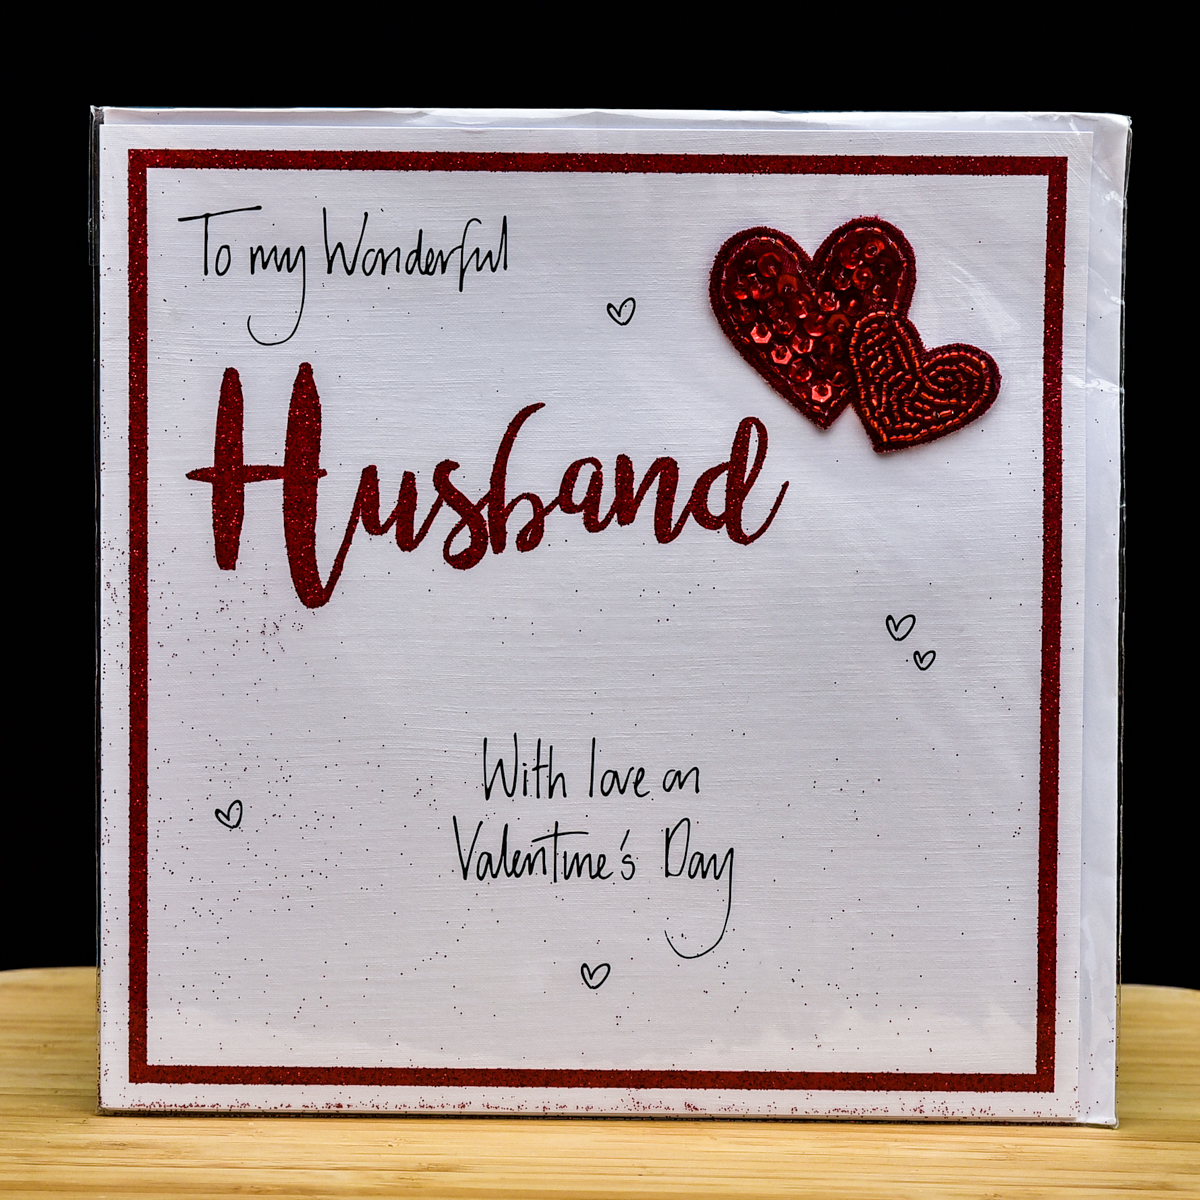 Wonderful Husband Valentine card - Gifts online UK UK Delivery ...